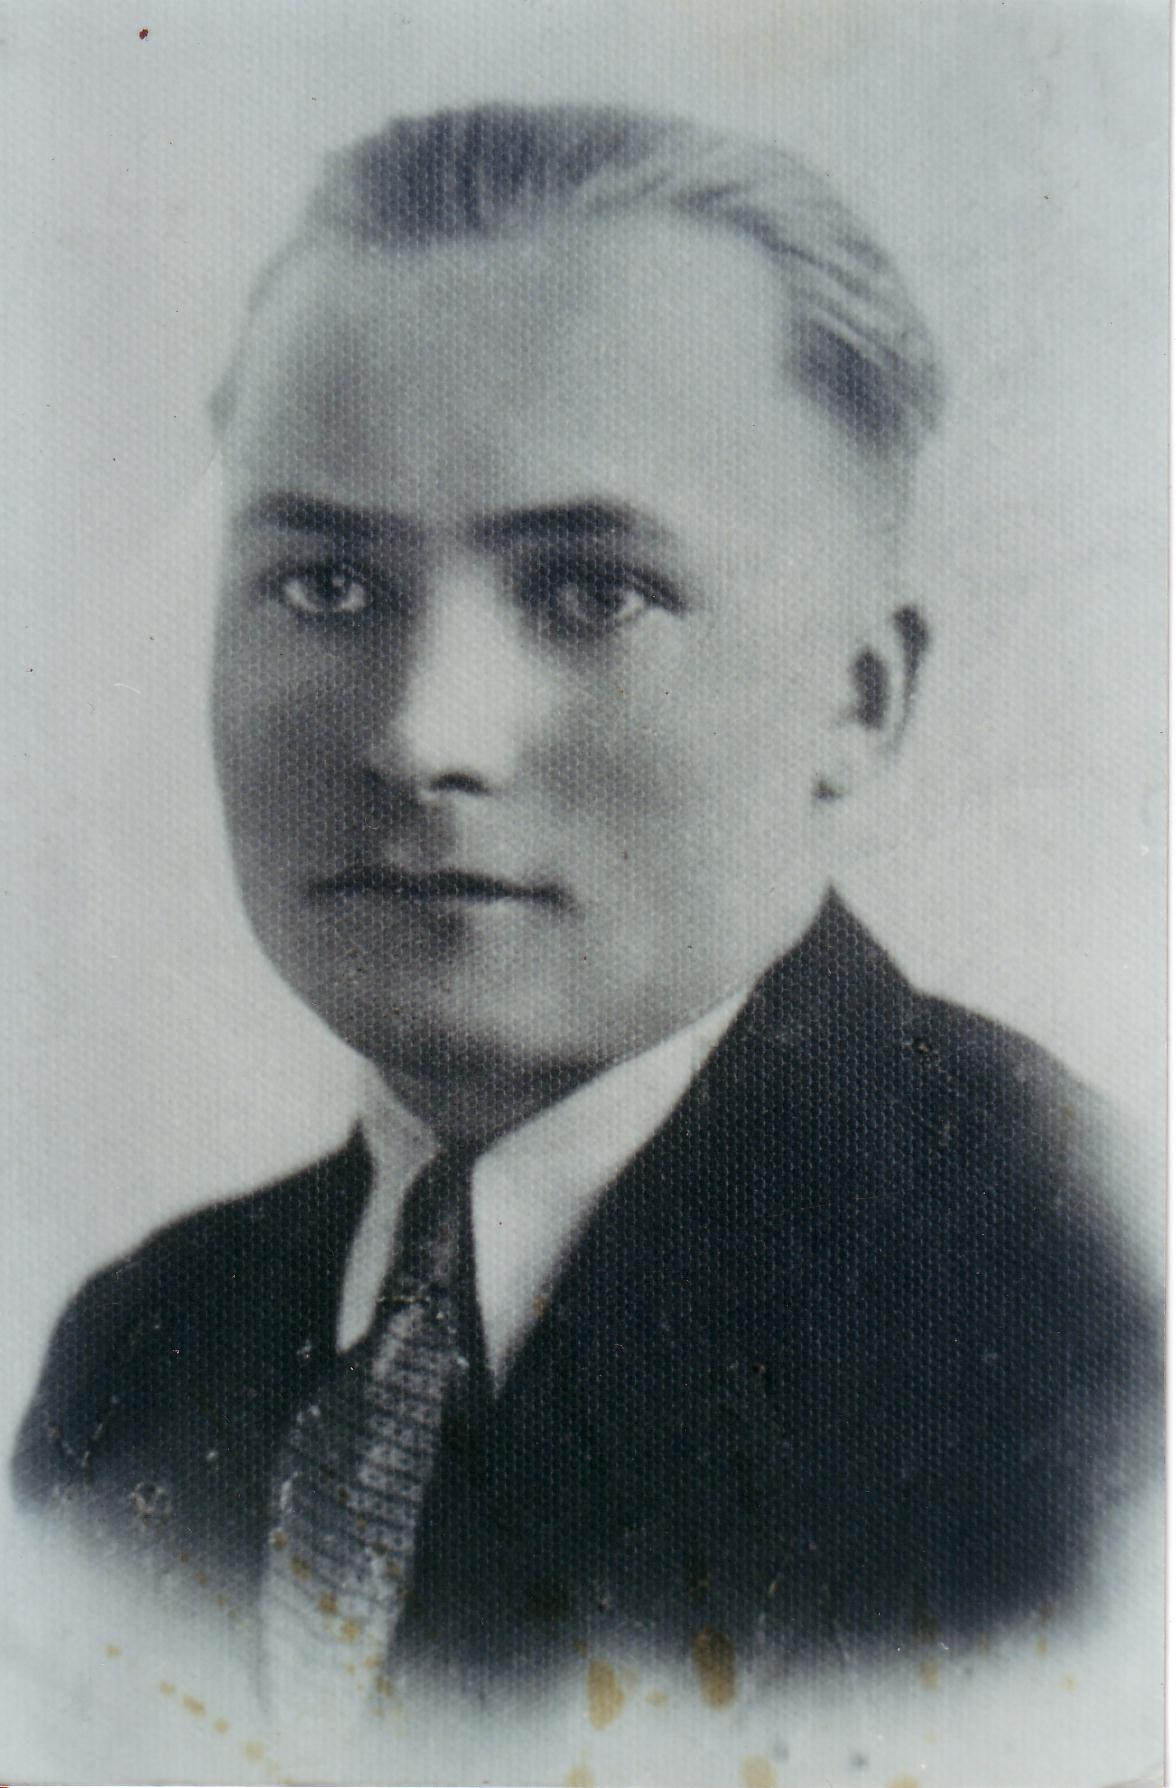 LNPA vadītāja vietnieks Staņislavs Ločmelis (Dūze). Ievainots Stompaku kaujā 1945. gada 2. martā. Miris no ievainojumiem 26. vai 28. martā.